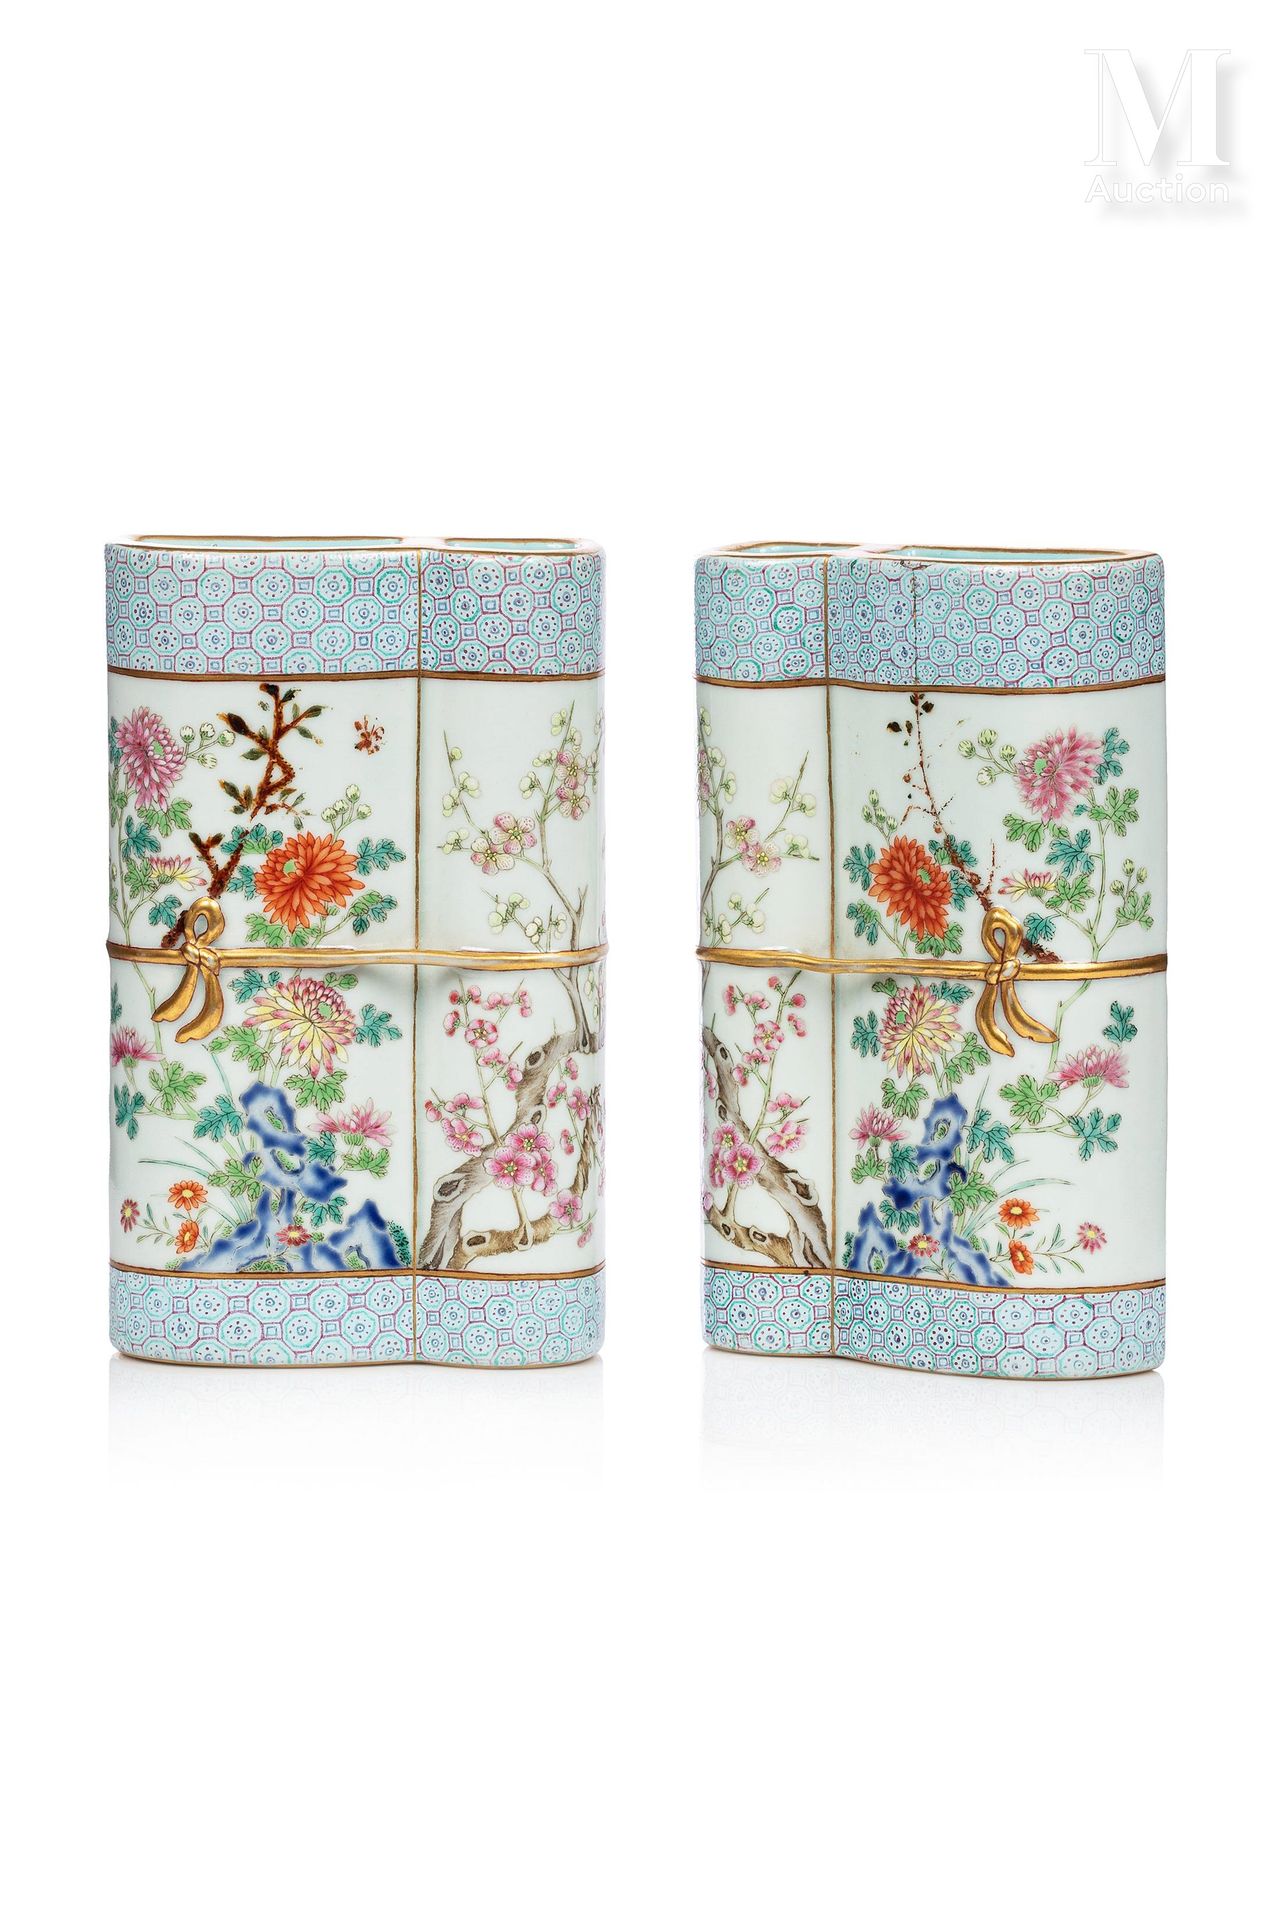 CHINE, XVIIIe SIÈCLE 
一对重要的卷轴形式的壁挂瓷瓶，每个都系着一条金色的丝带，并在前面部分打了一个优雅的结，它们呈现出粉红色家族的季节性花&hellip;